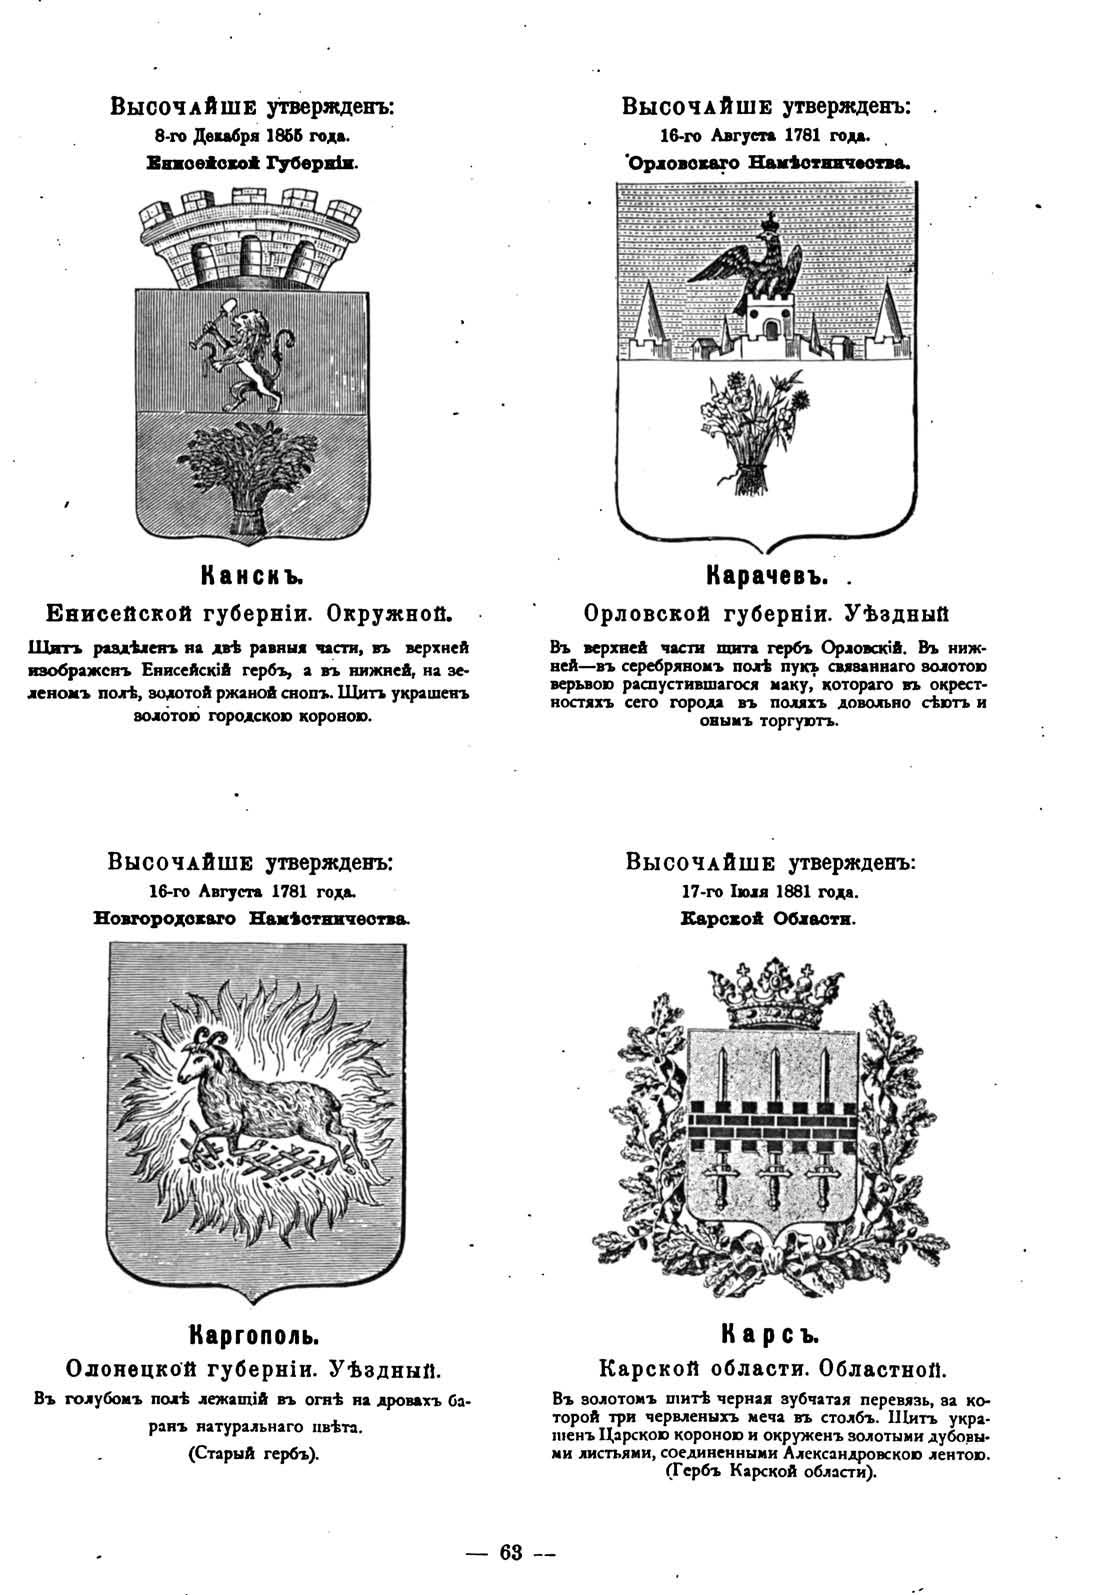 герб козельска фото